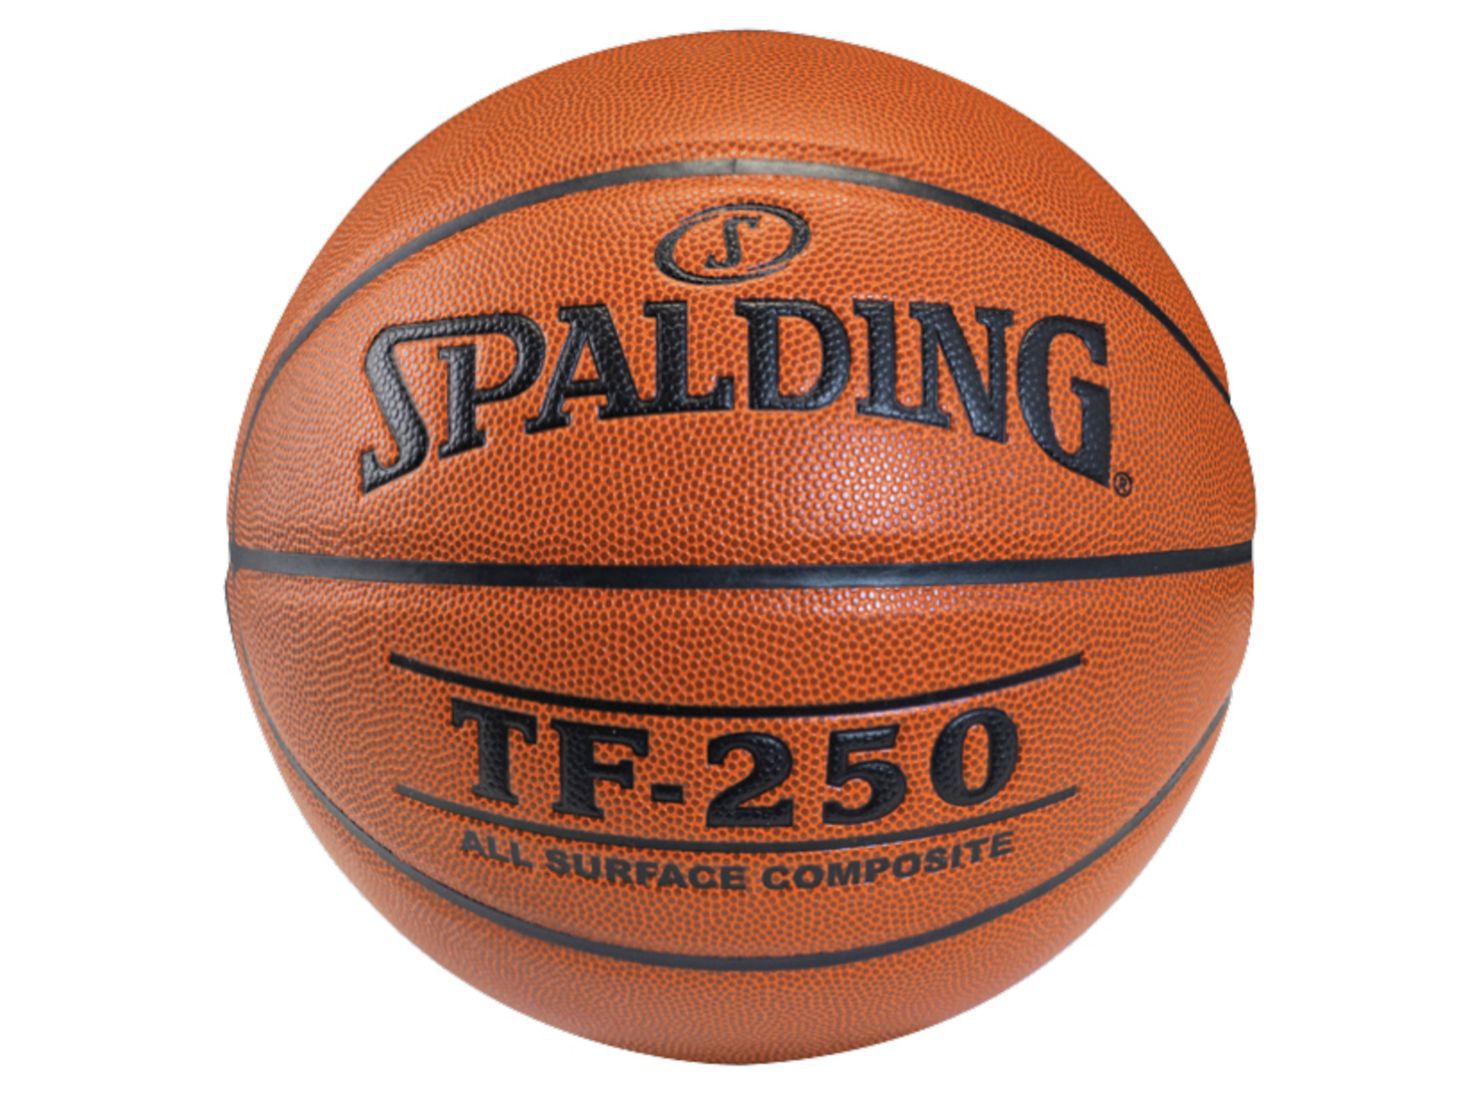 Pelota de Basketball Spalding Talla 5 - Básquetbol